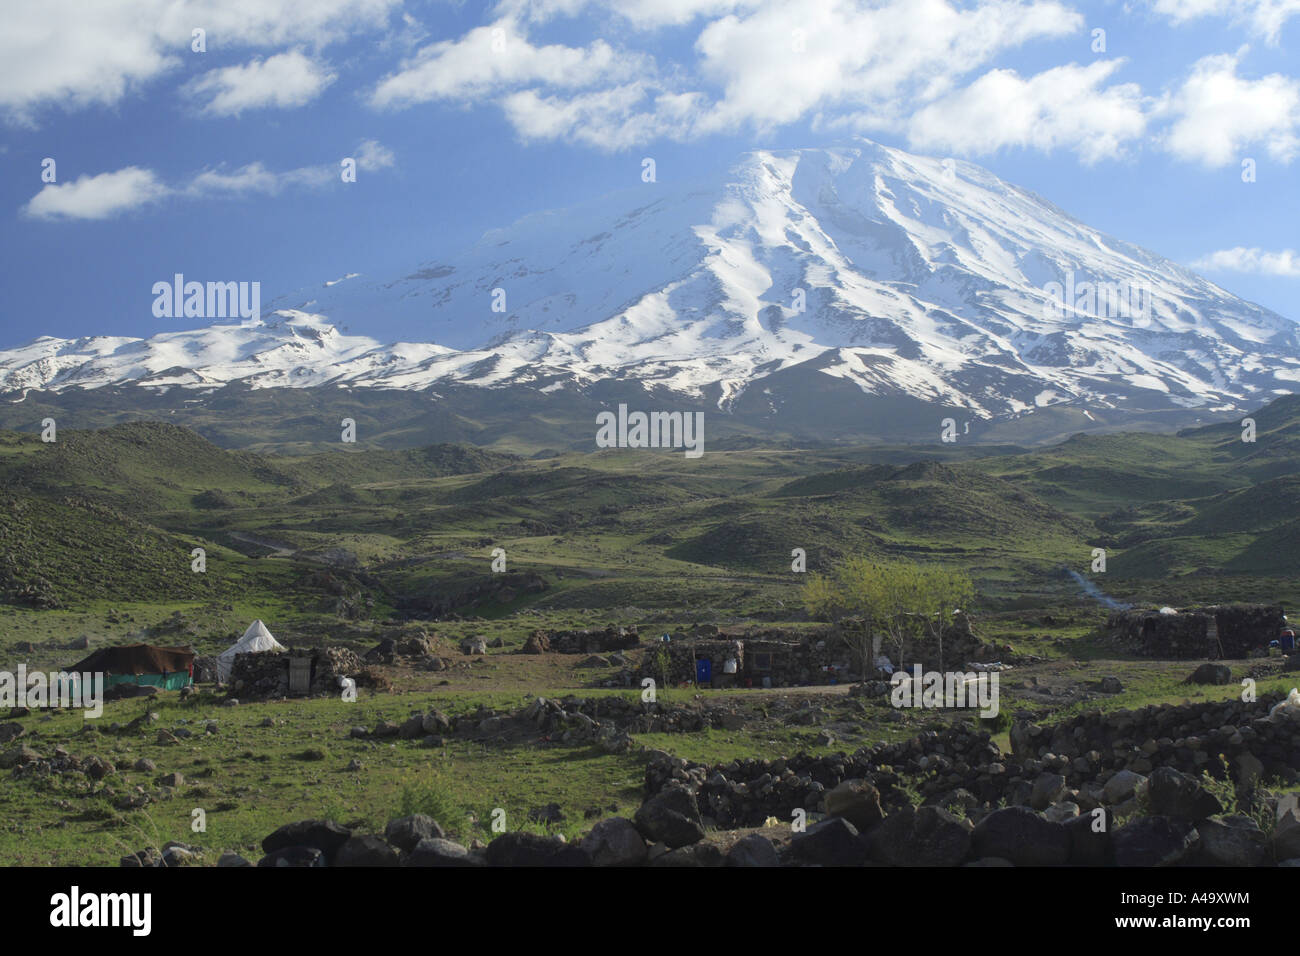 Il monte Ararat con un campo nomadi in primo piano, Turchia, Anatolia Orientale, Dogubayzit Foto Stock